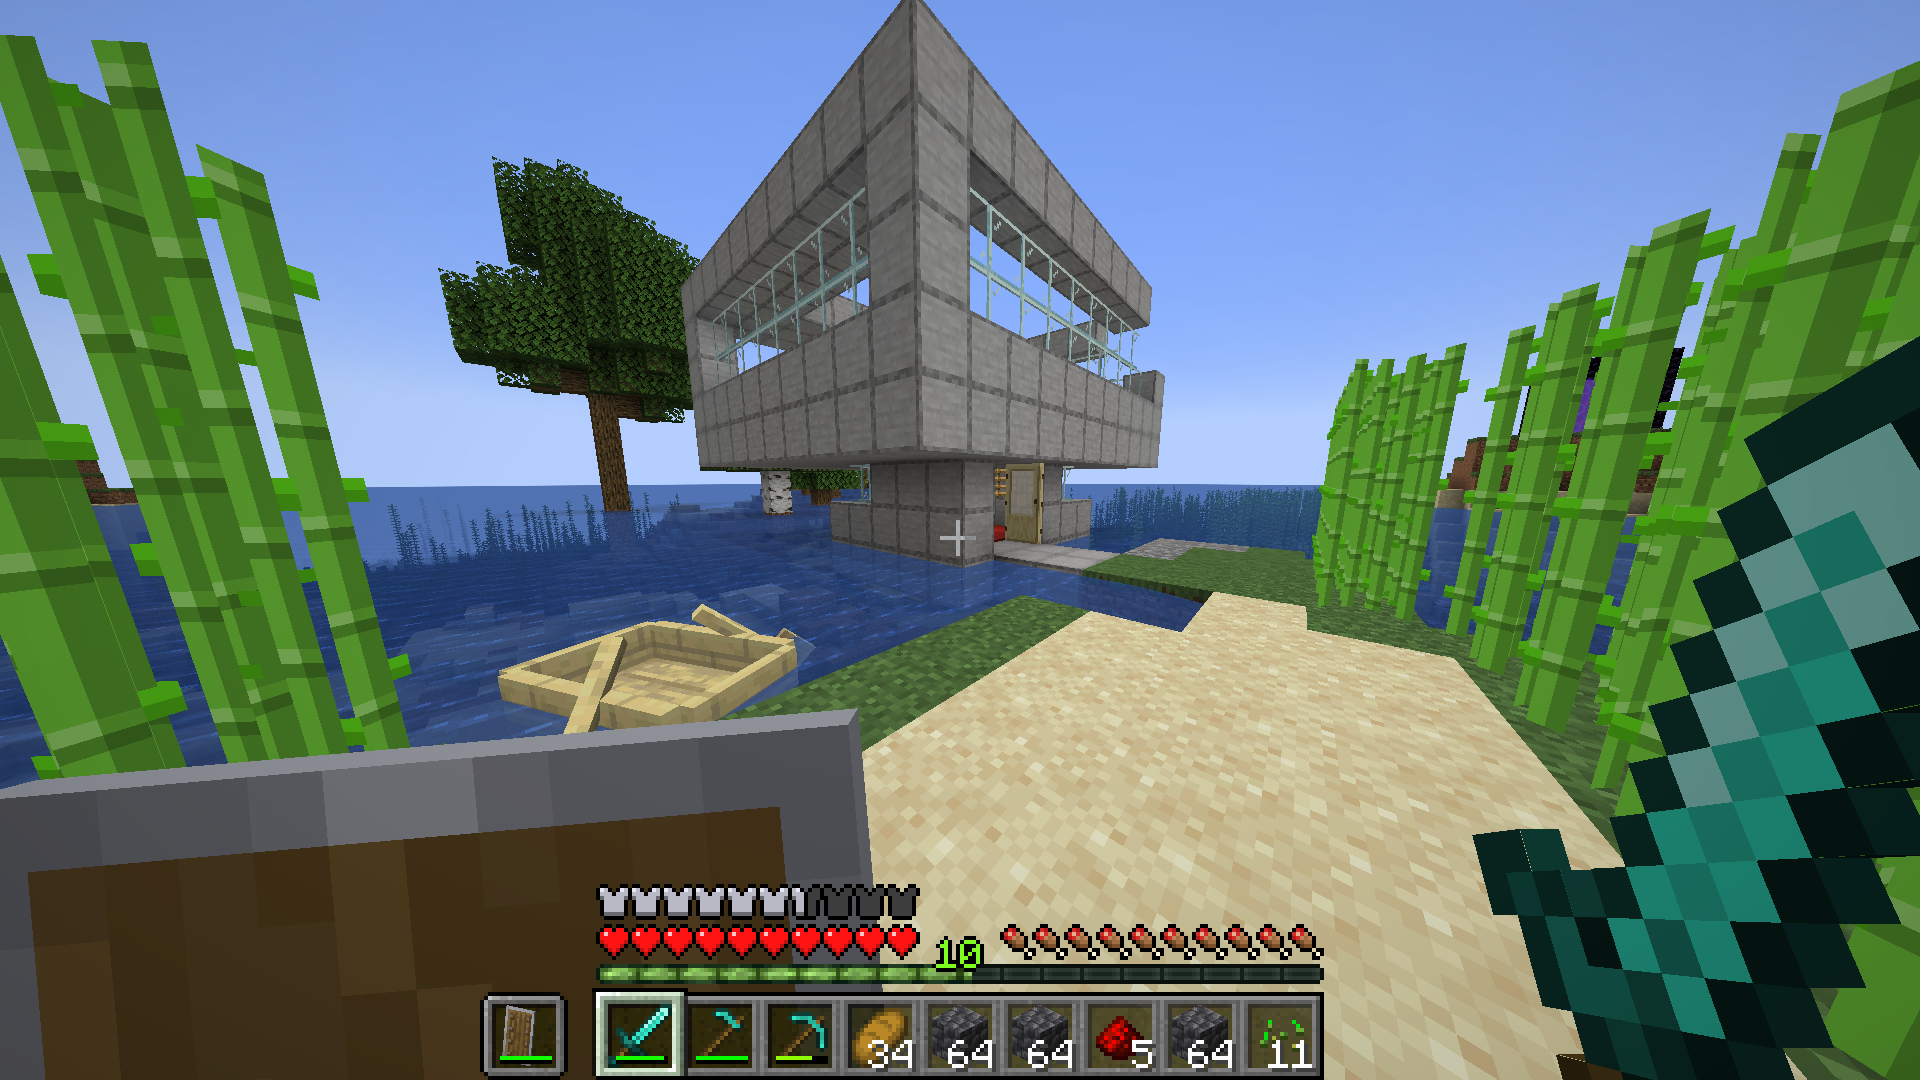 A seaside home-in-progress in Minecraft.